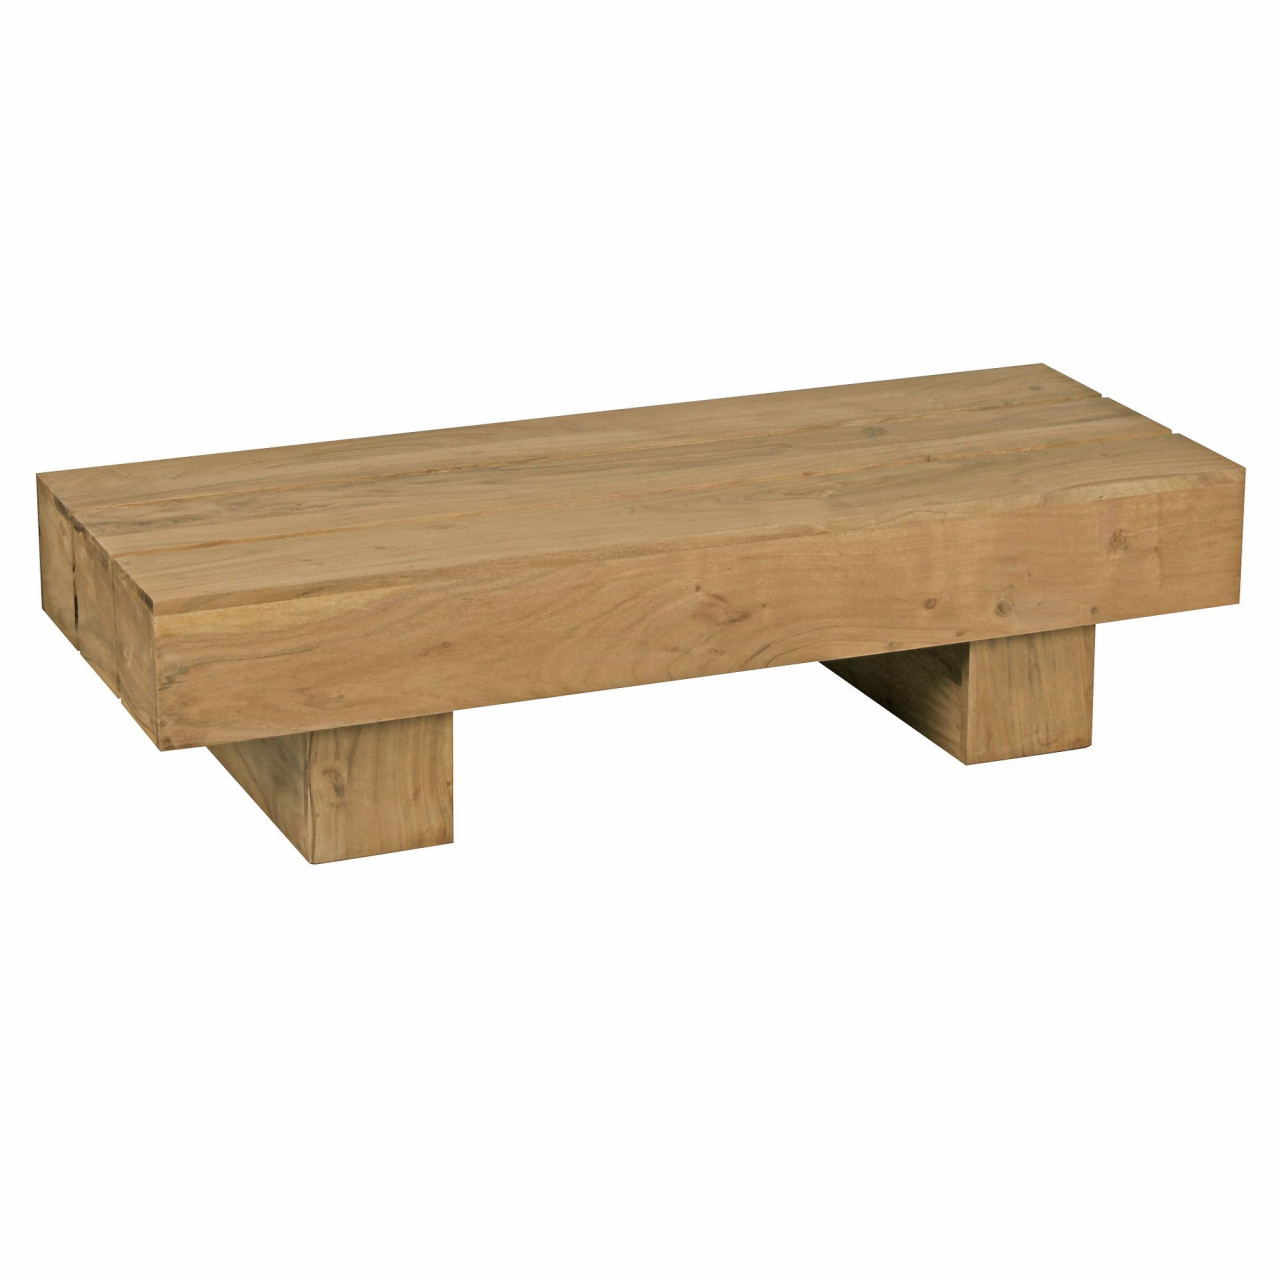 Couchtisch LUCCA Massiv-Holz Akazie 120cm breit Design Wohnzimmer-Tisch dunkel-braun Landhaus-Stil Beistelltisch von Wohnling